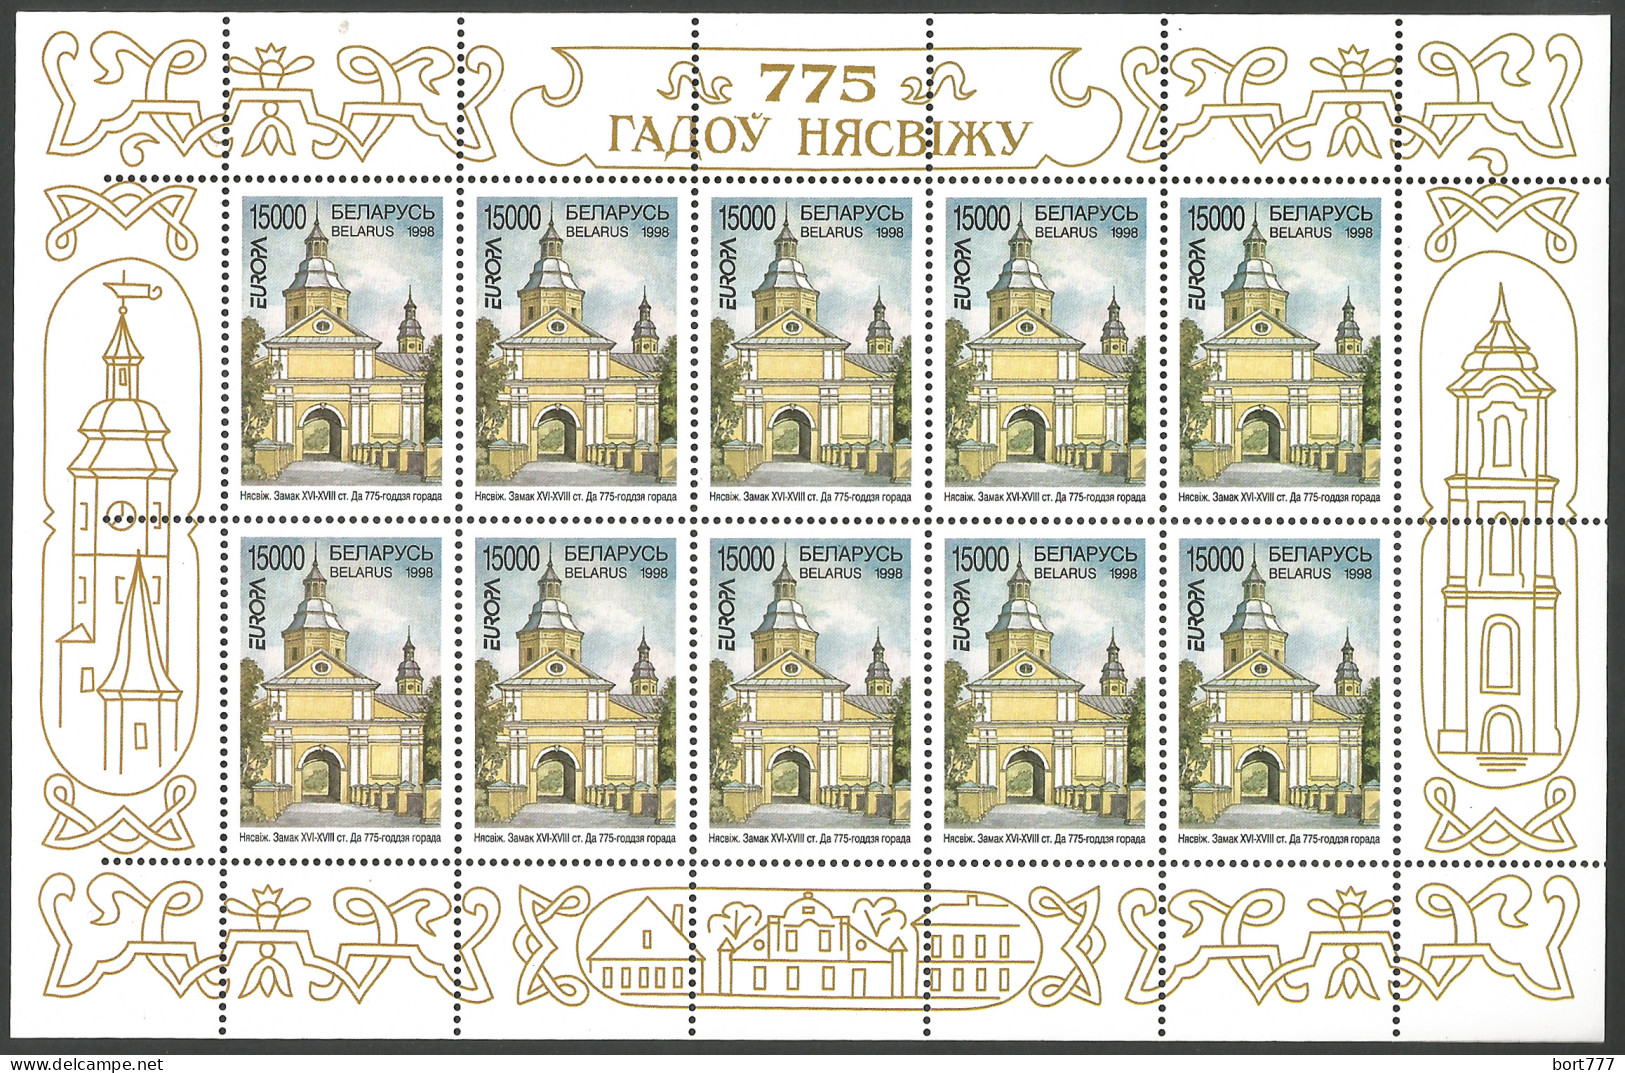 BELARUS Mini Sheet Mint Stamps MNH(**), 1998 Years EUROPA CEPT - Belarus